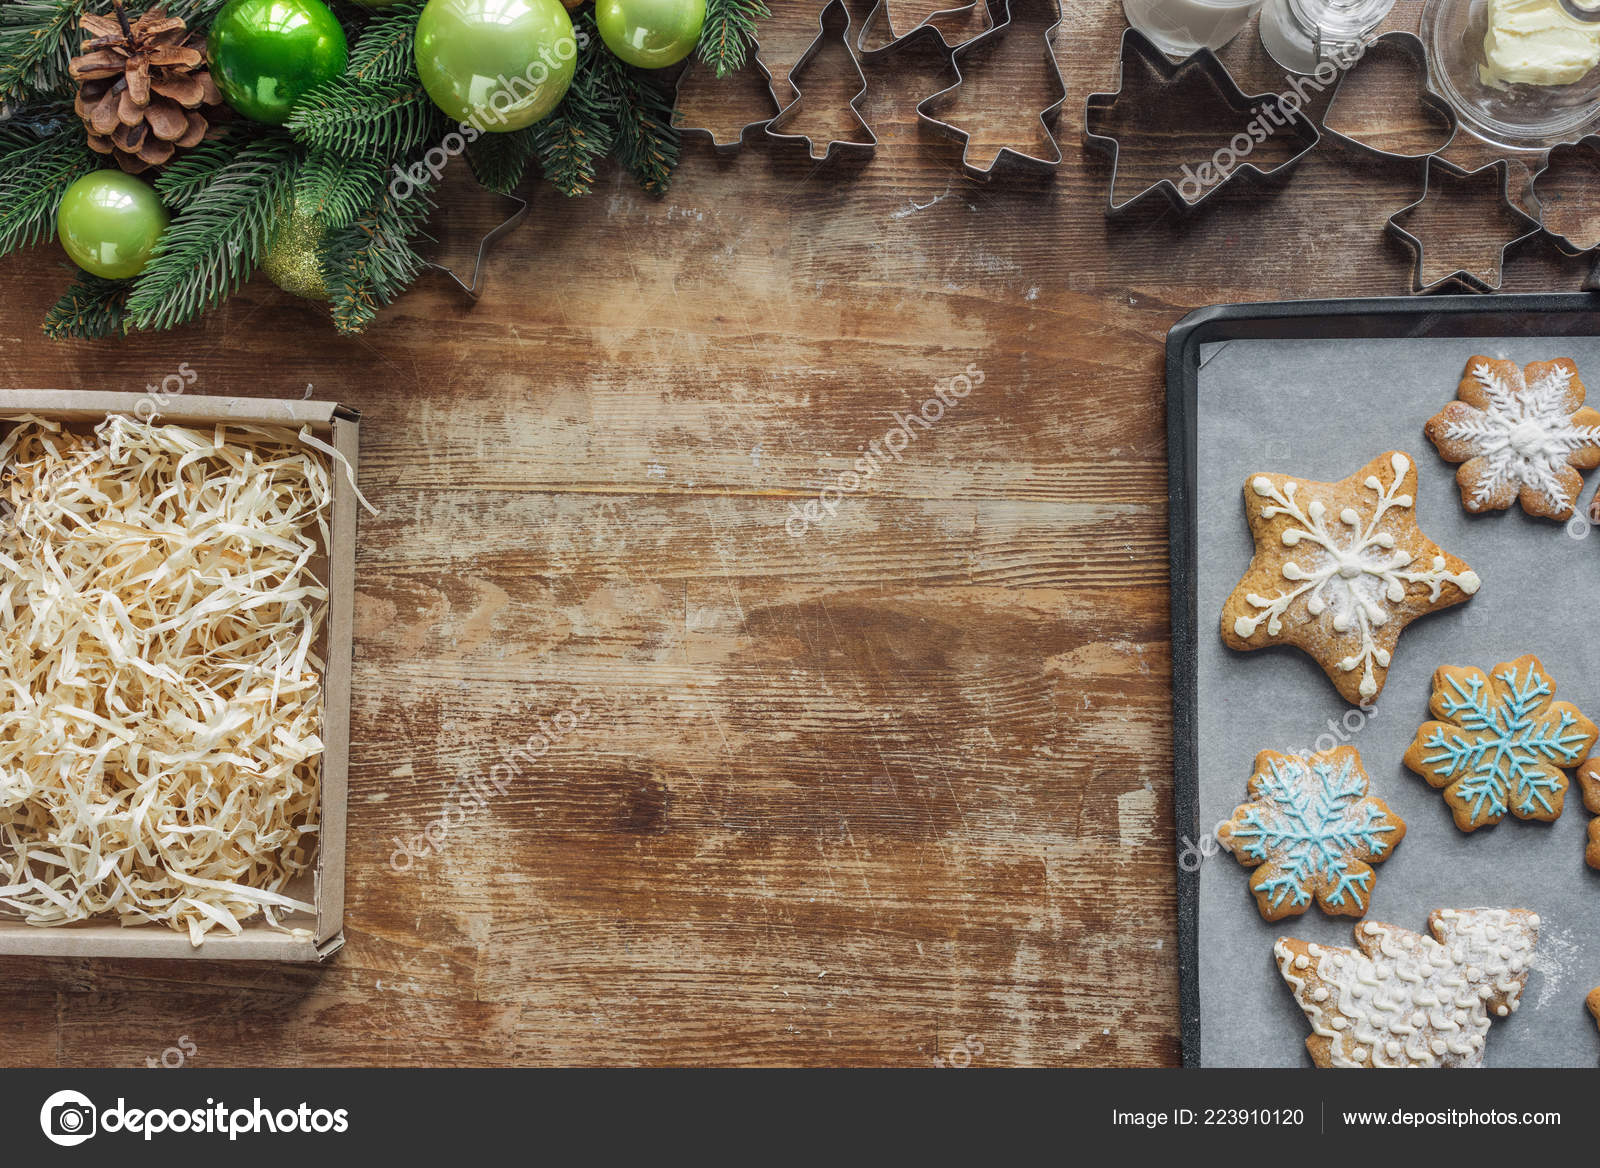 https://st4.depositphotos.com/13324256/22391/i/1600/depositphotos_223910120-stock-photo-flat-lay-christmas-cookies-baking.jpg